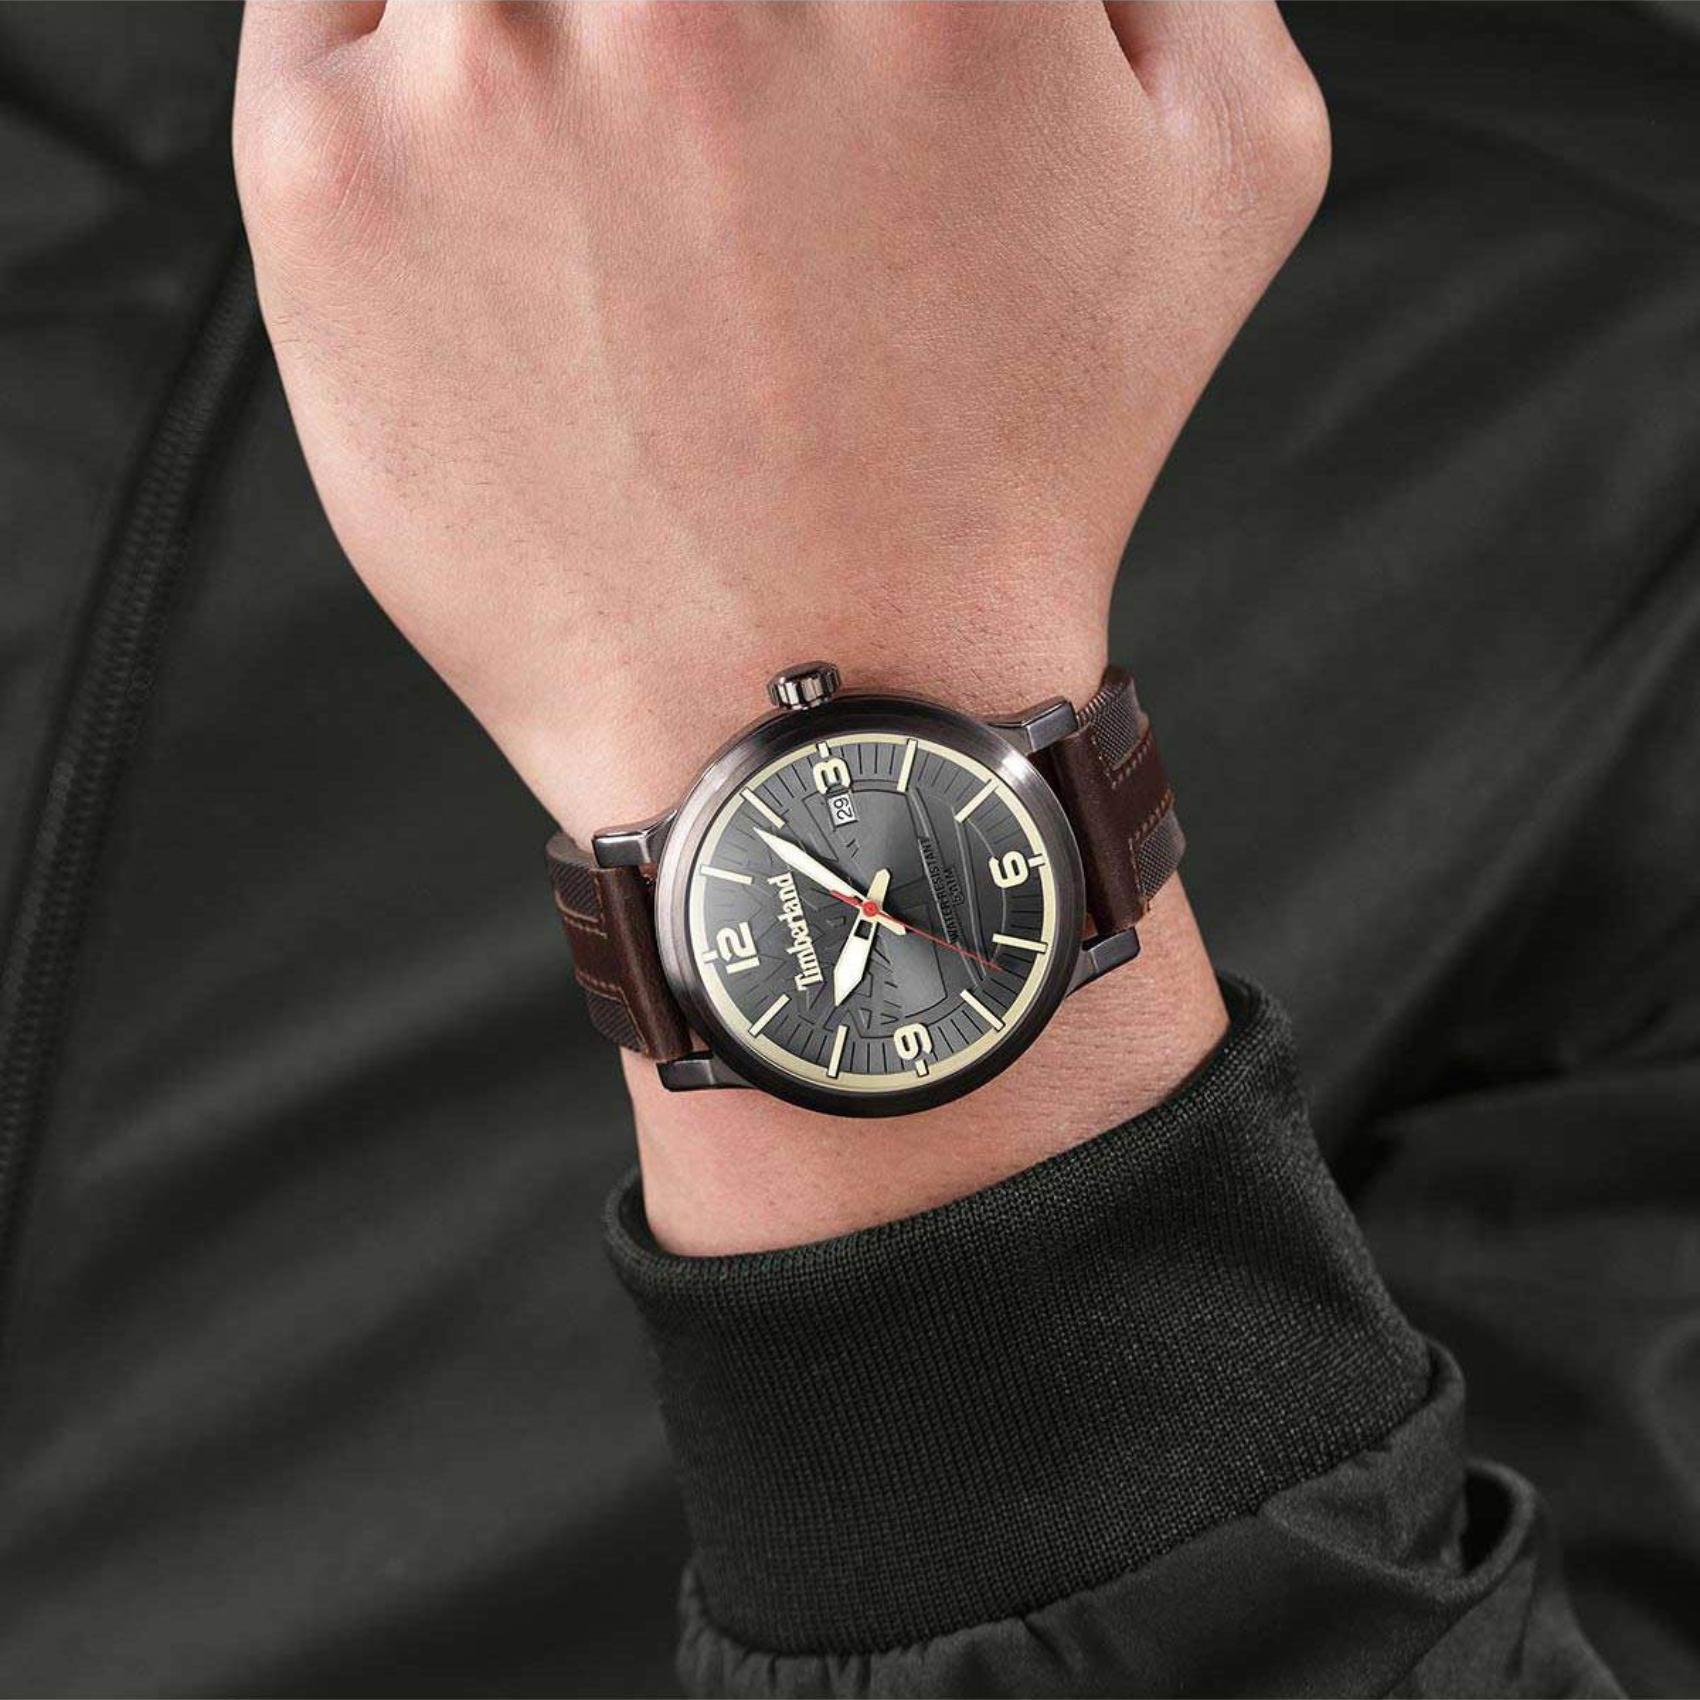 Αντρικό ρολόι Timberland Westerley TDWGN0029104 με καφέ δερμάτινο λουράκι και μαύρο καντράν διαμέτρου 46mm με ημερομηνία.